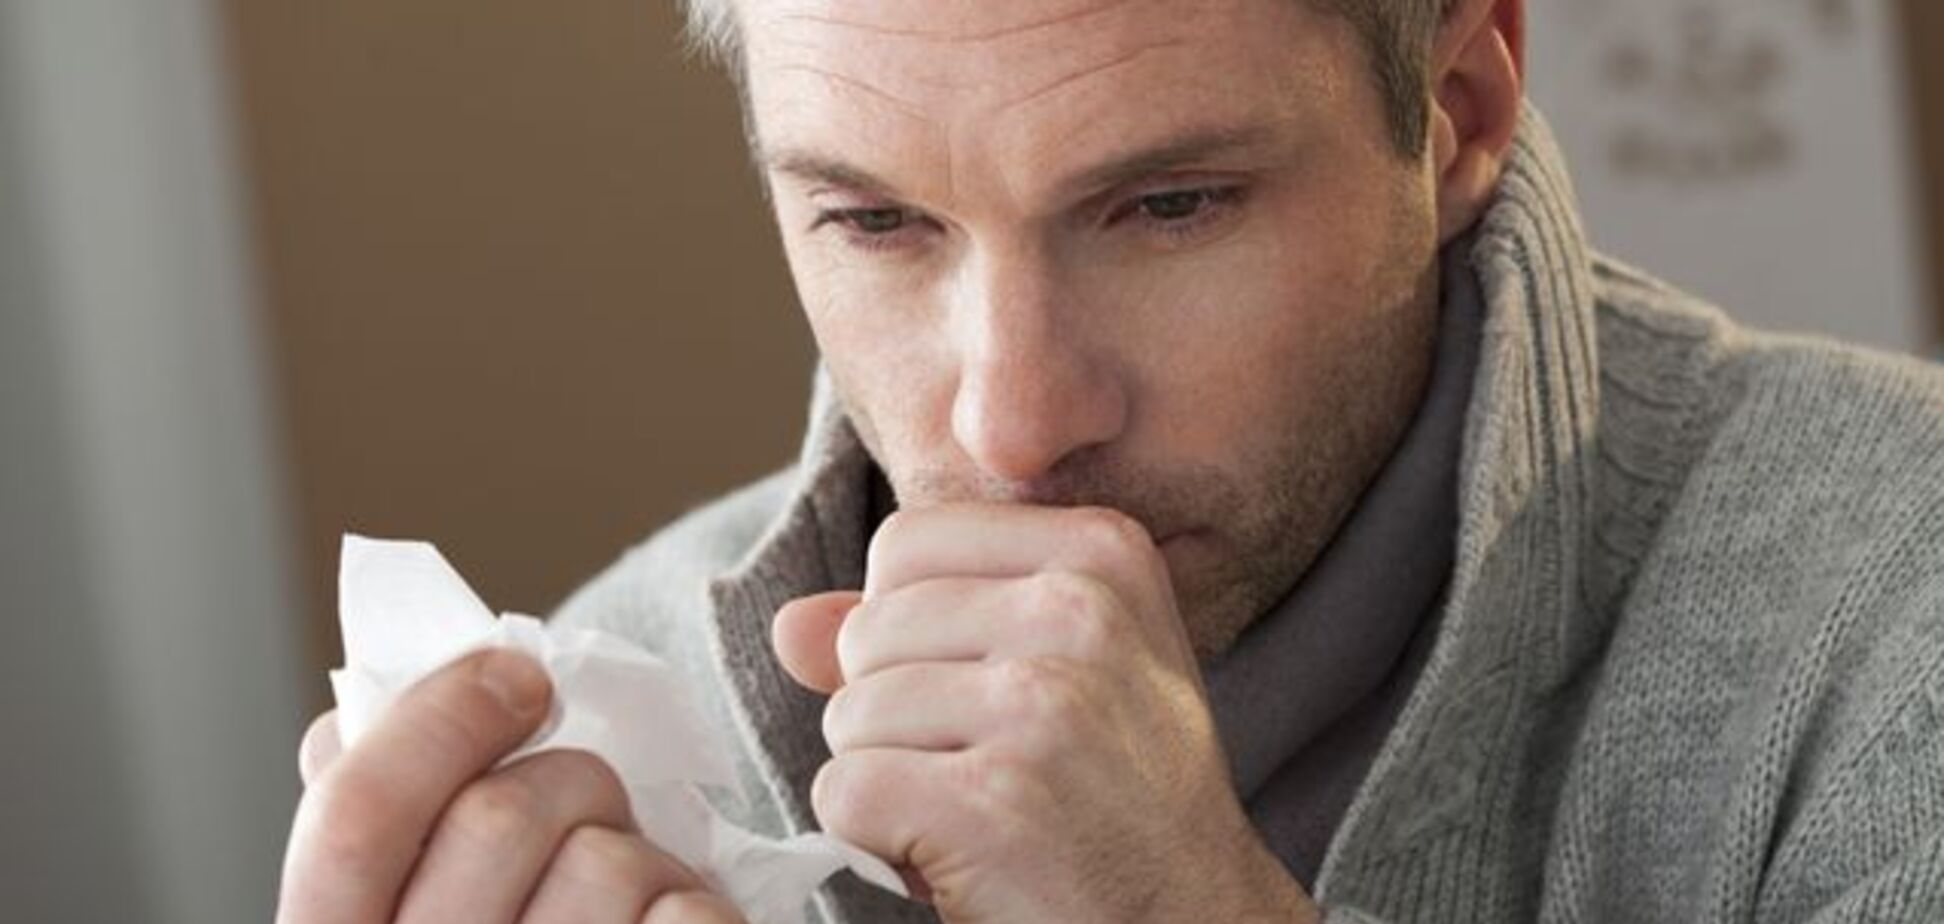 Це може бути не застуда: вісім серйозних хвороб, які спричинюють кашель